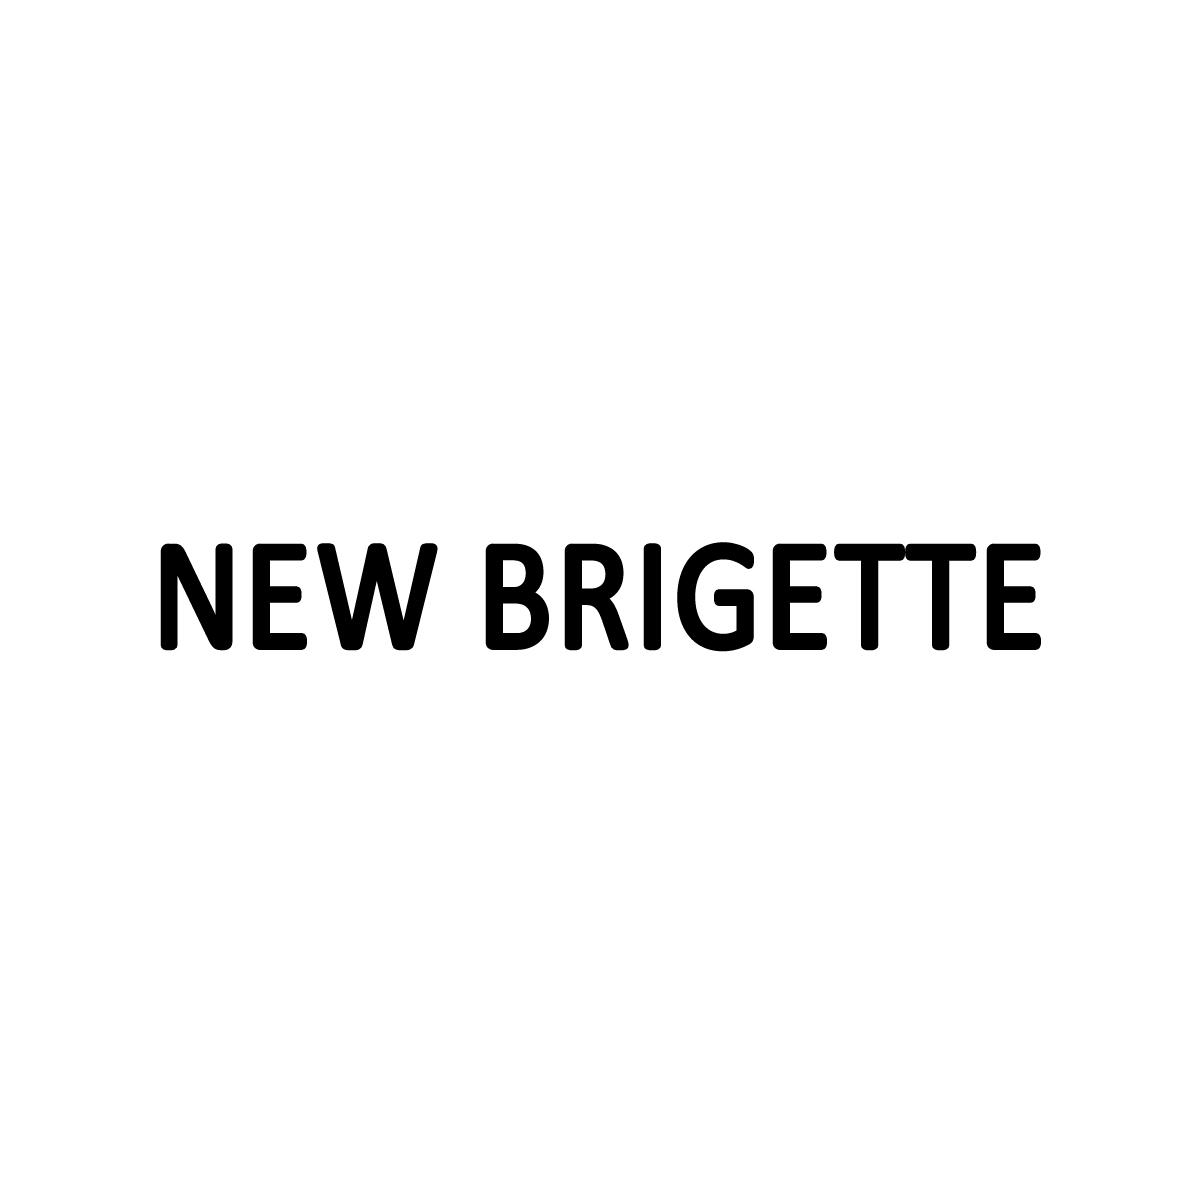 NEW BRIGETTE